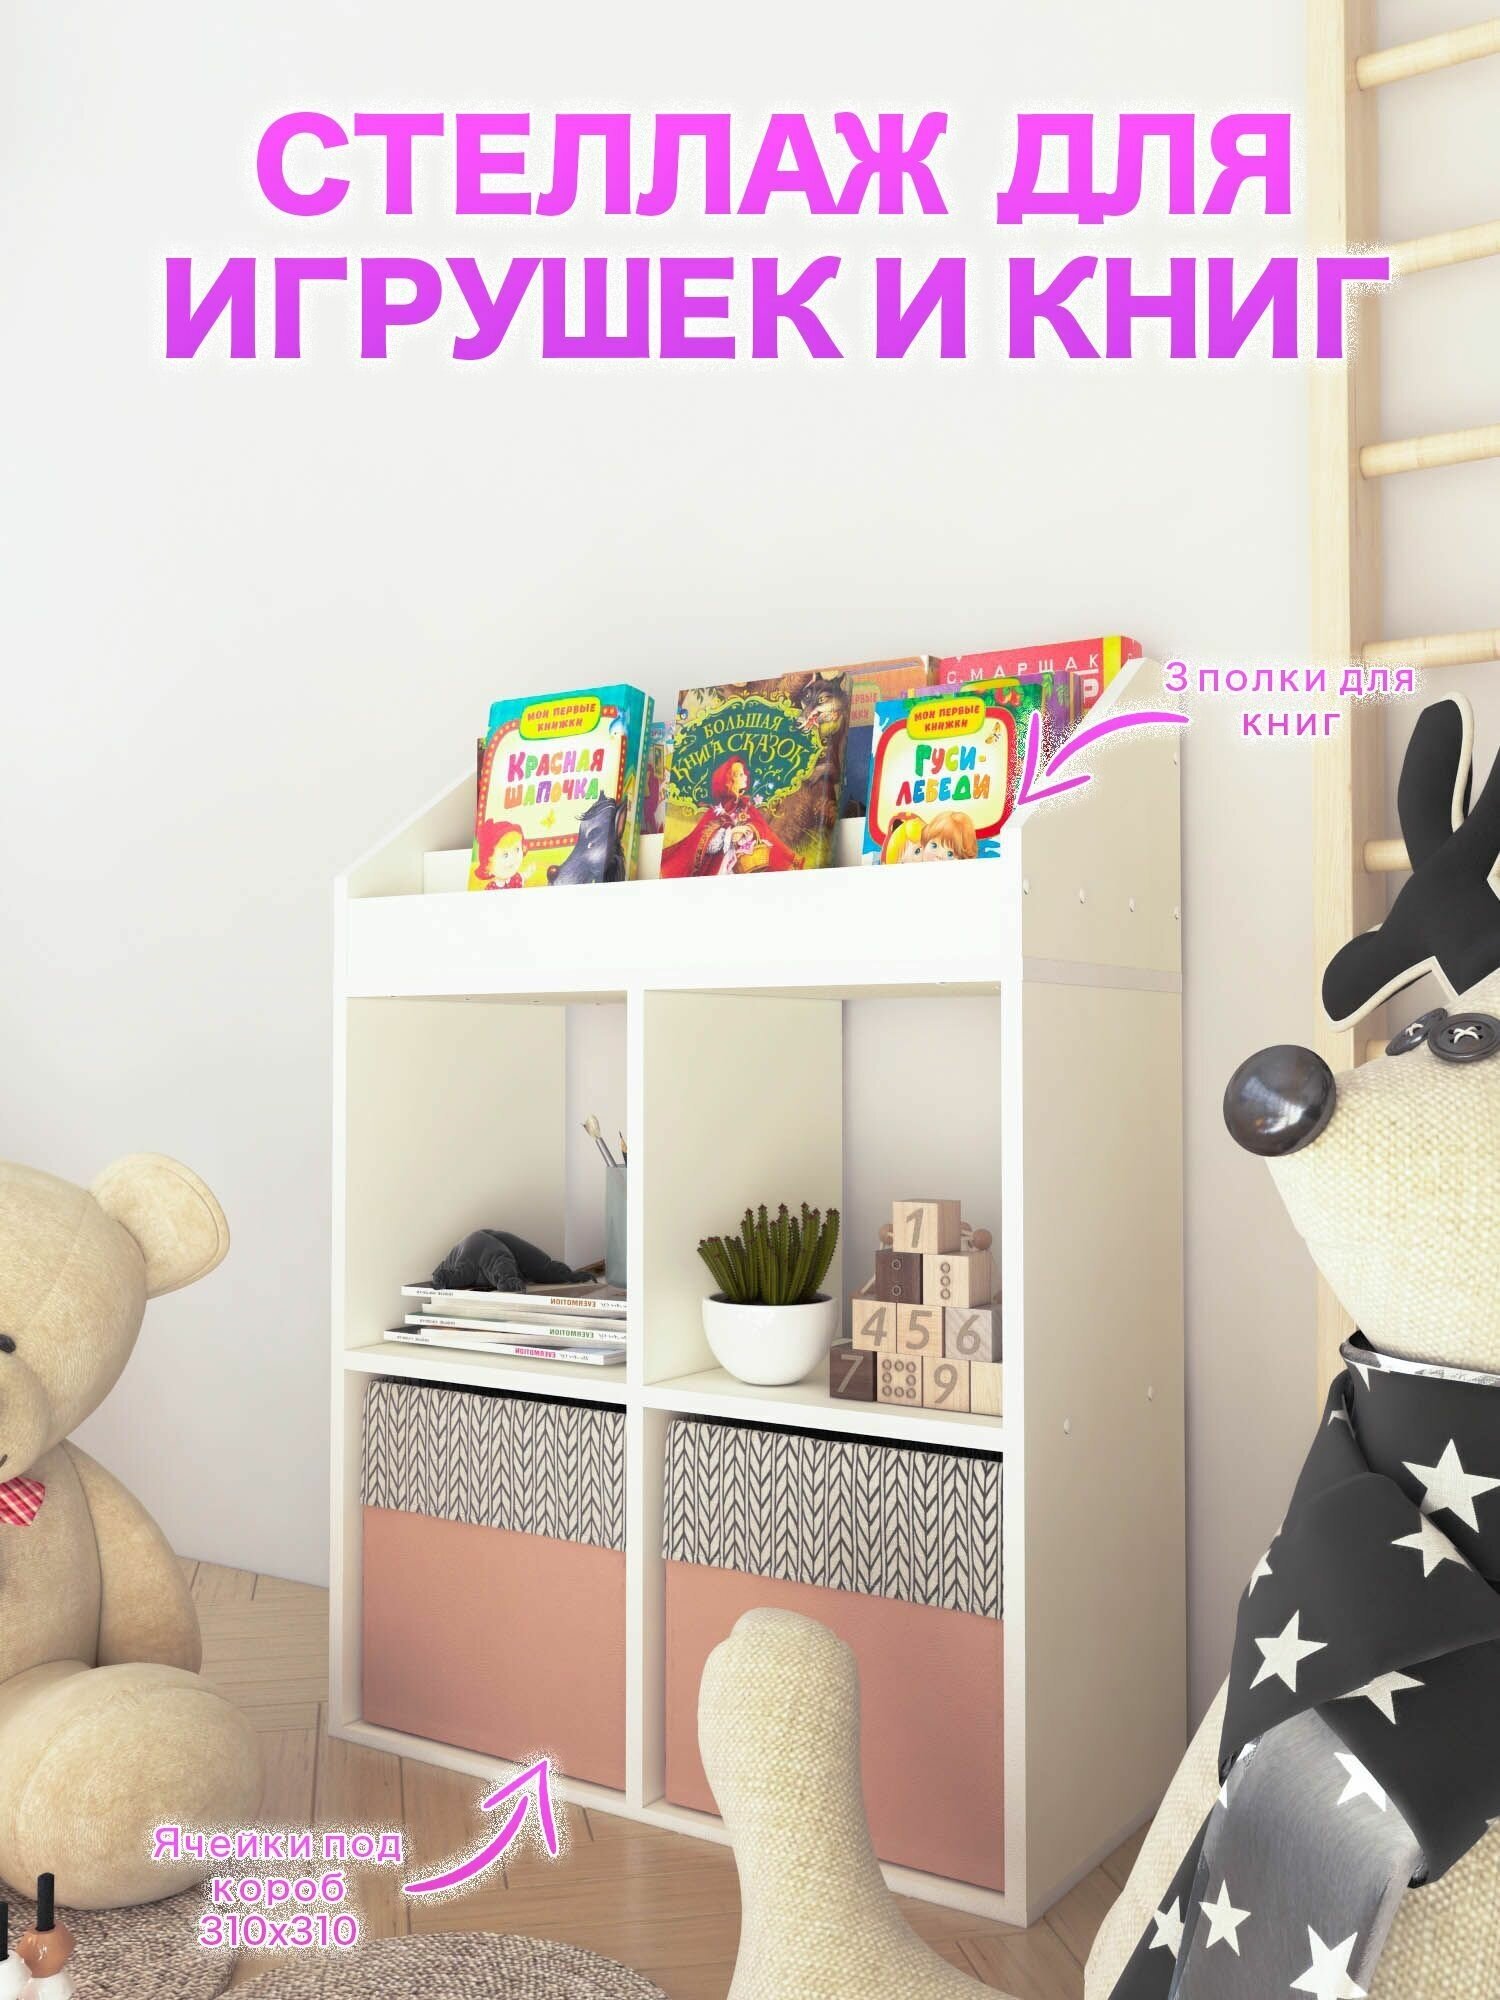 Детский стеллаж для хранения игрушек и книг.